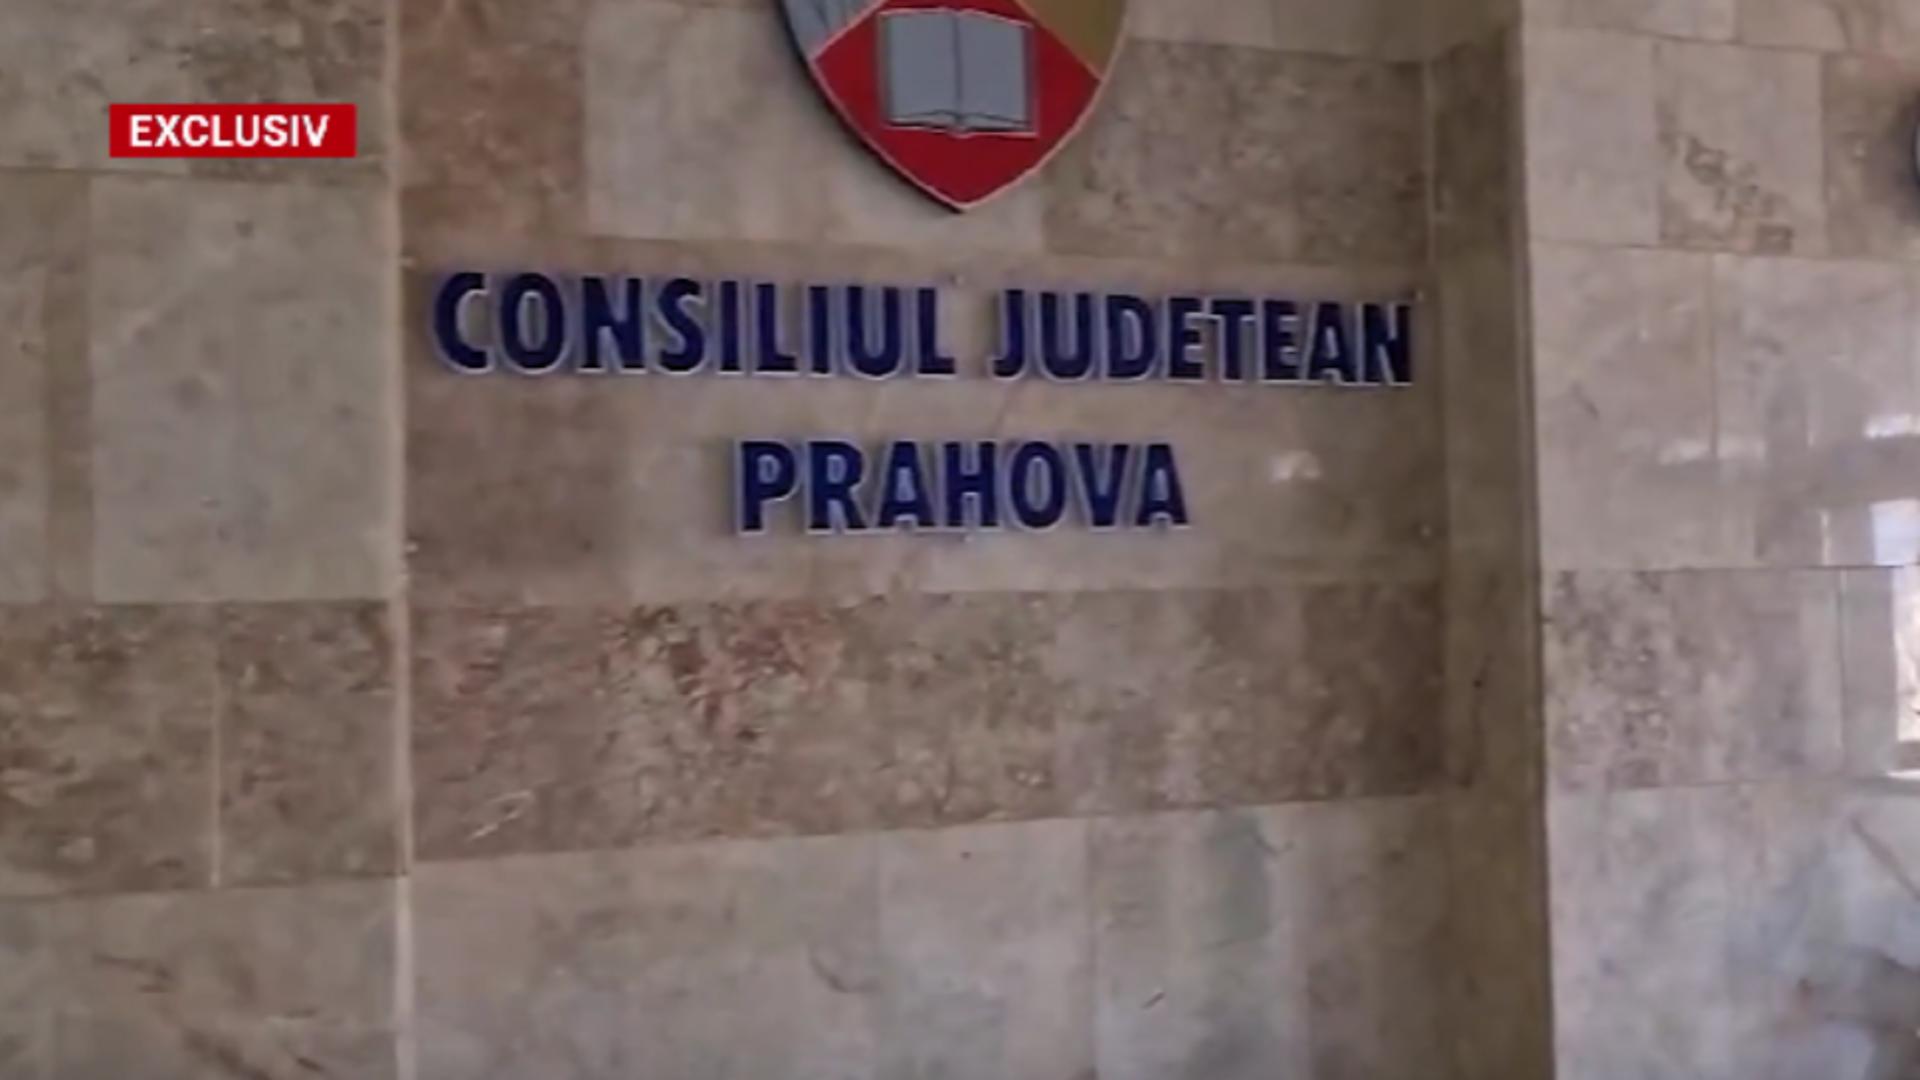 Istoric de CORUPȚIE la Consiliul Județean Prahova. Predecesorii lui Dumitrescu s-au confruntat cu dosare penale